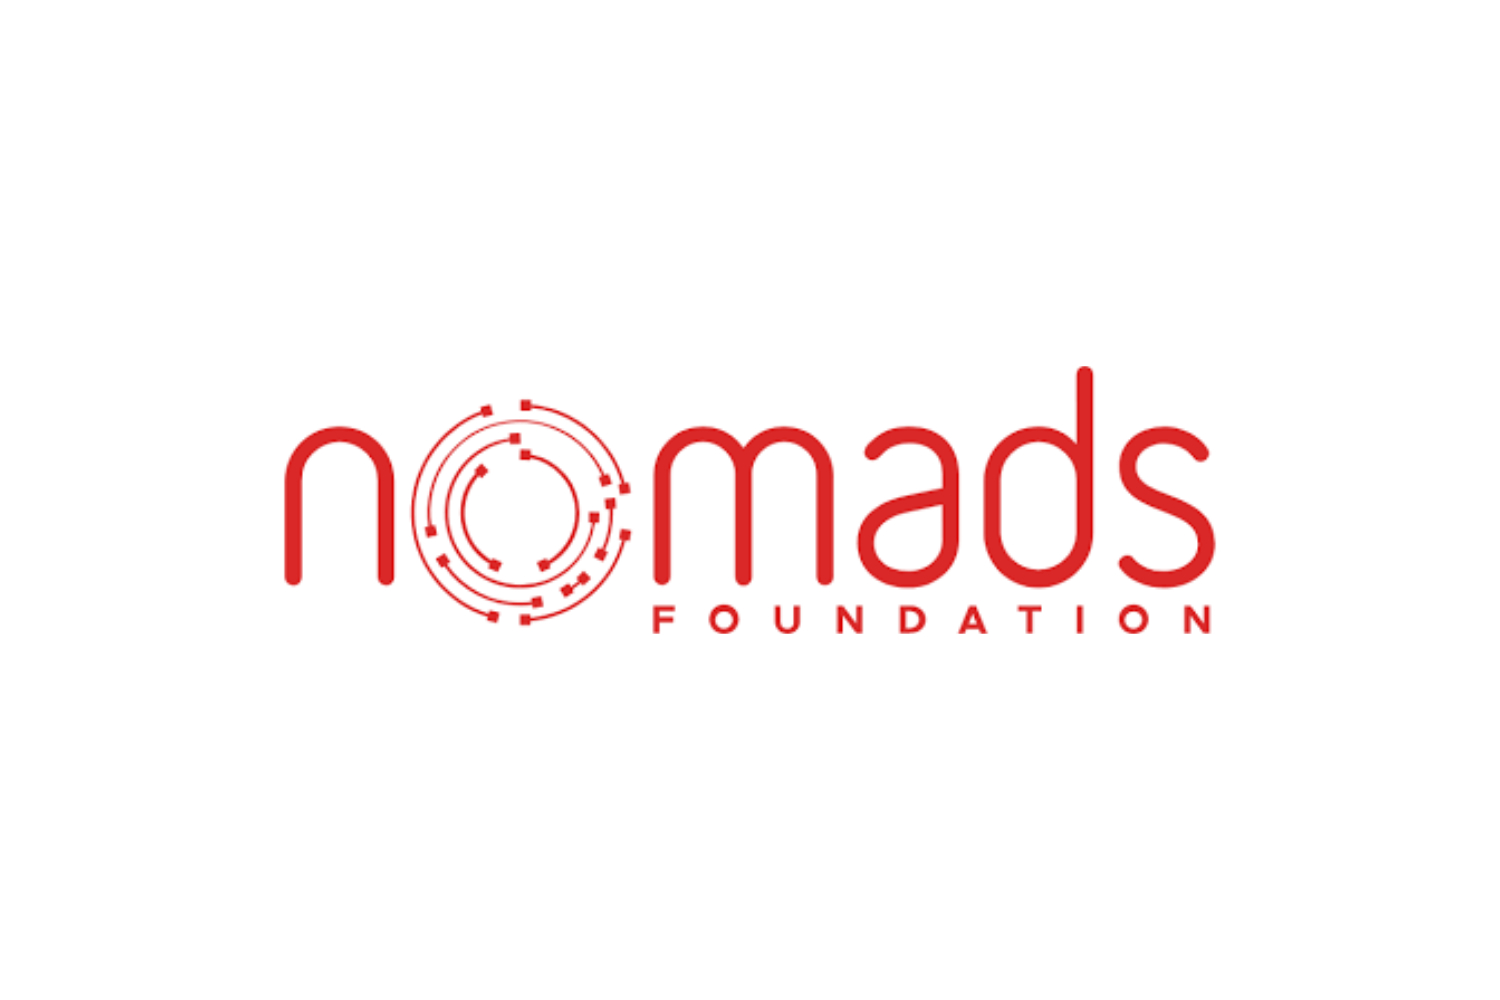 Nomads Foundation